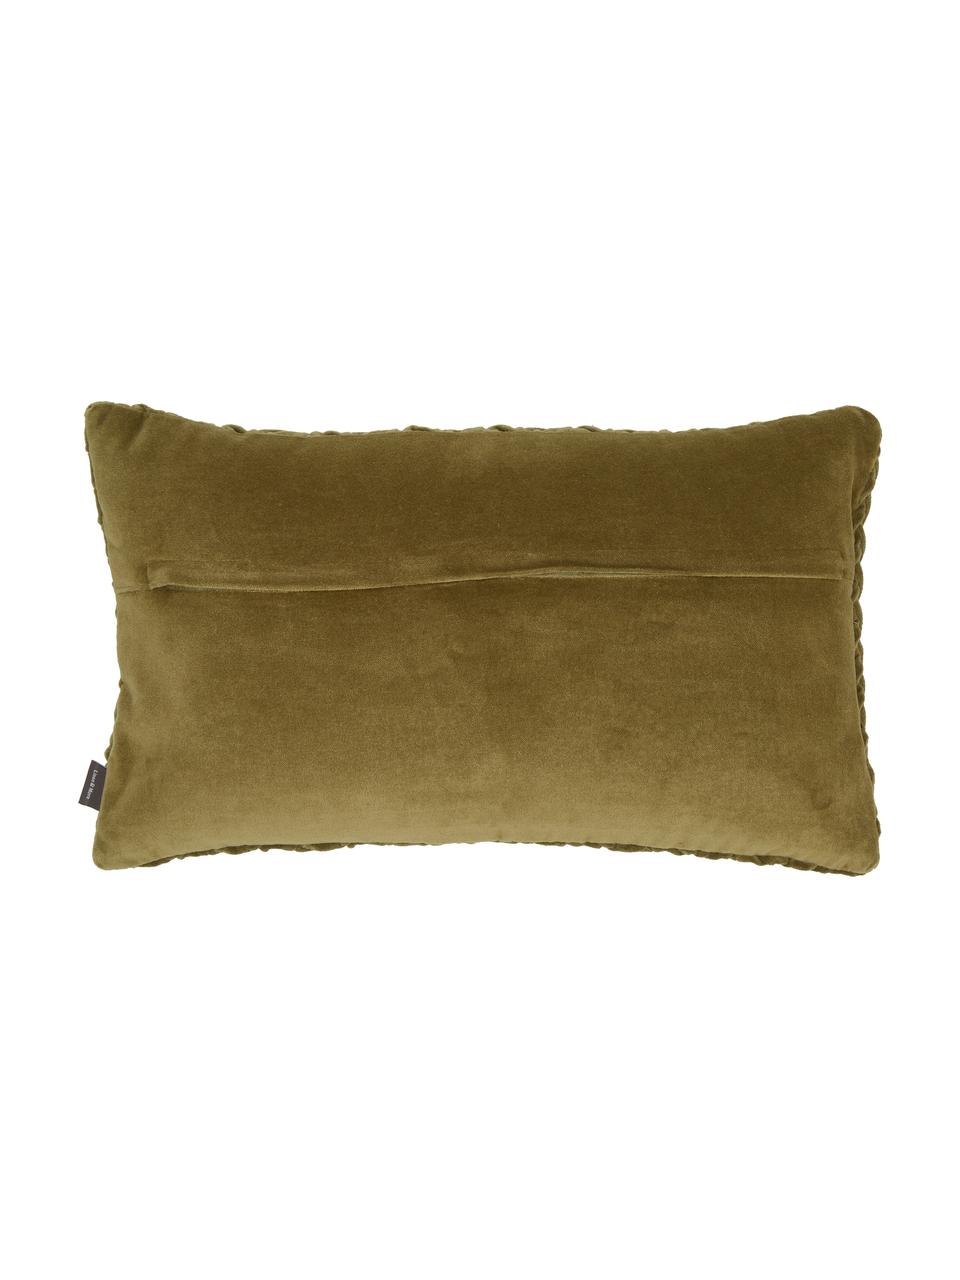 Poduszka z aksamitu z wypełnieniem Smock, Tapicerka: 100% aksamit bawełniany, Cedrowy zielony, S 30 x D 50 cm